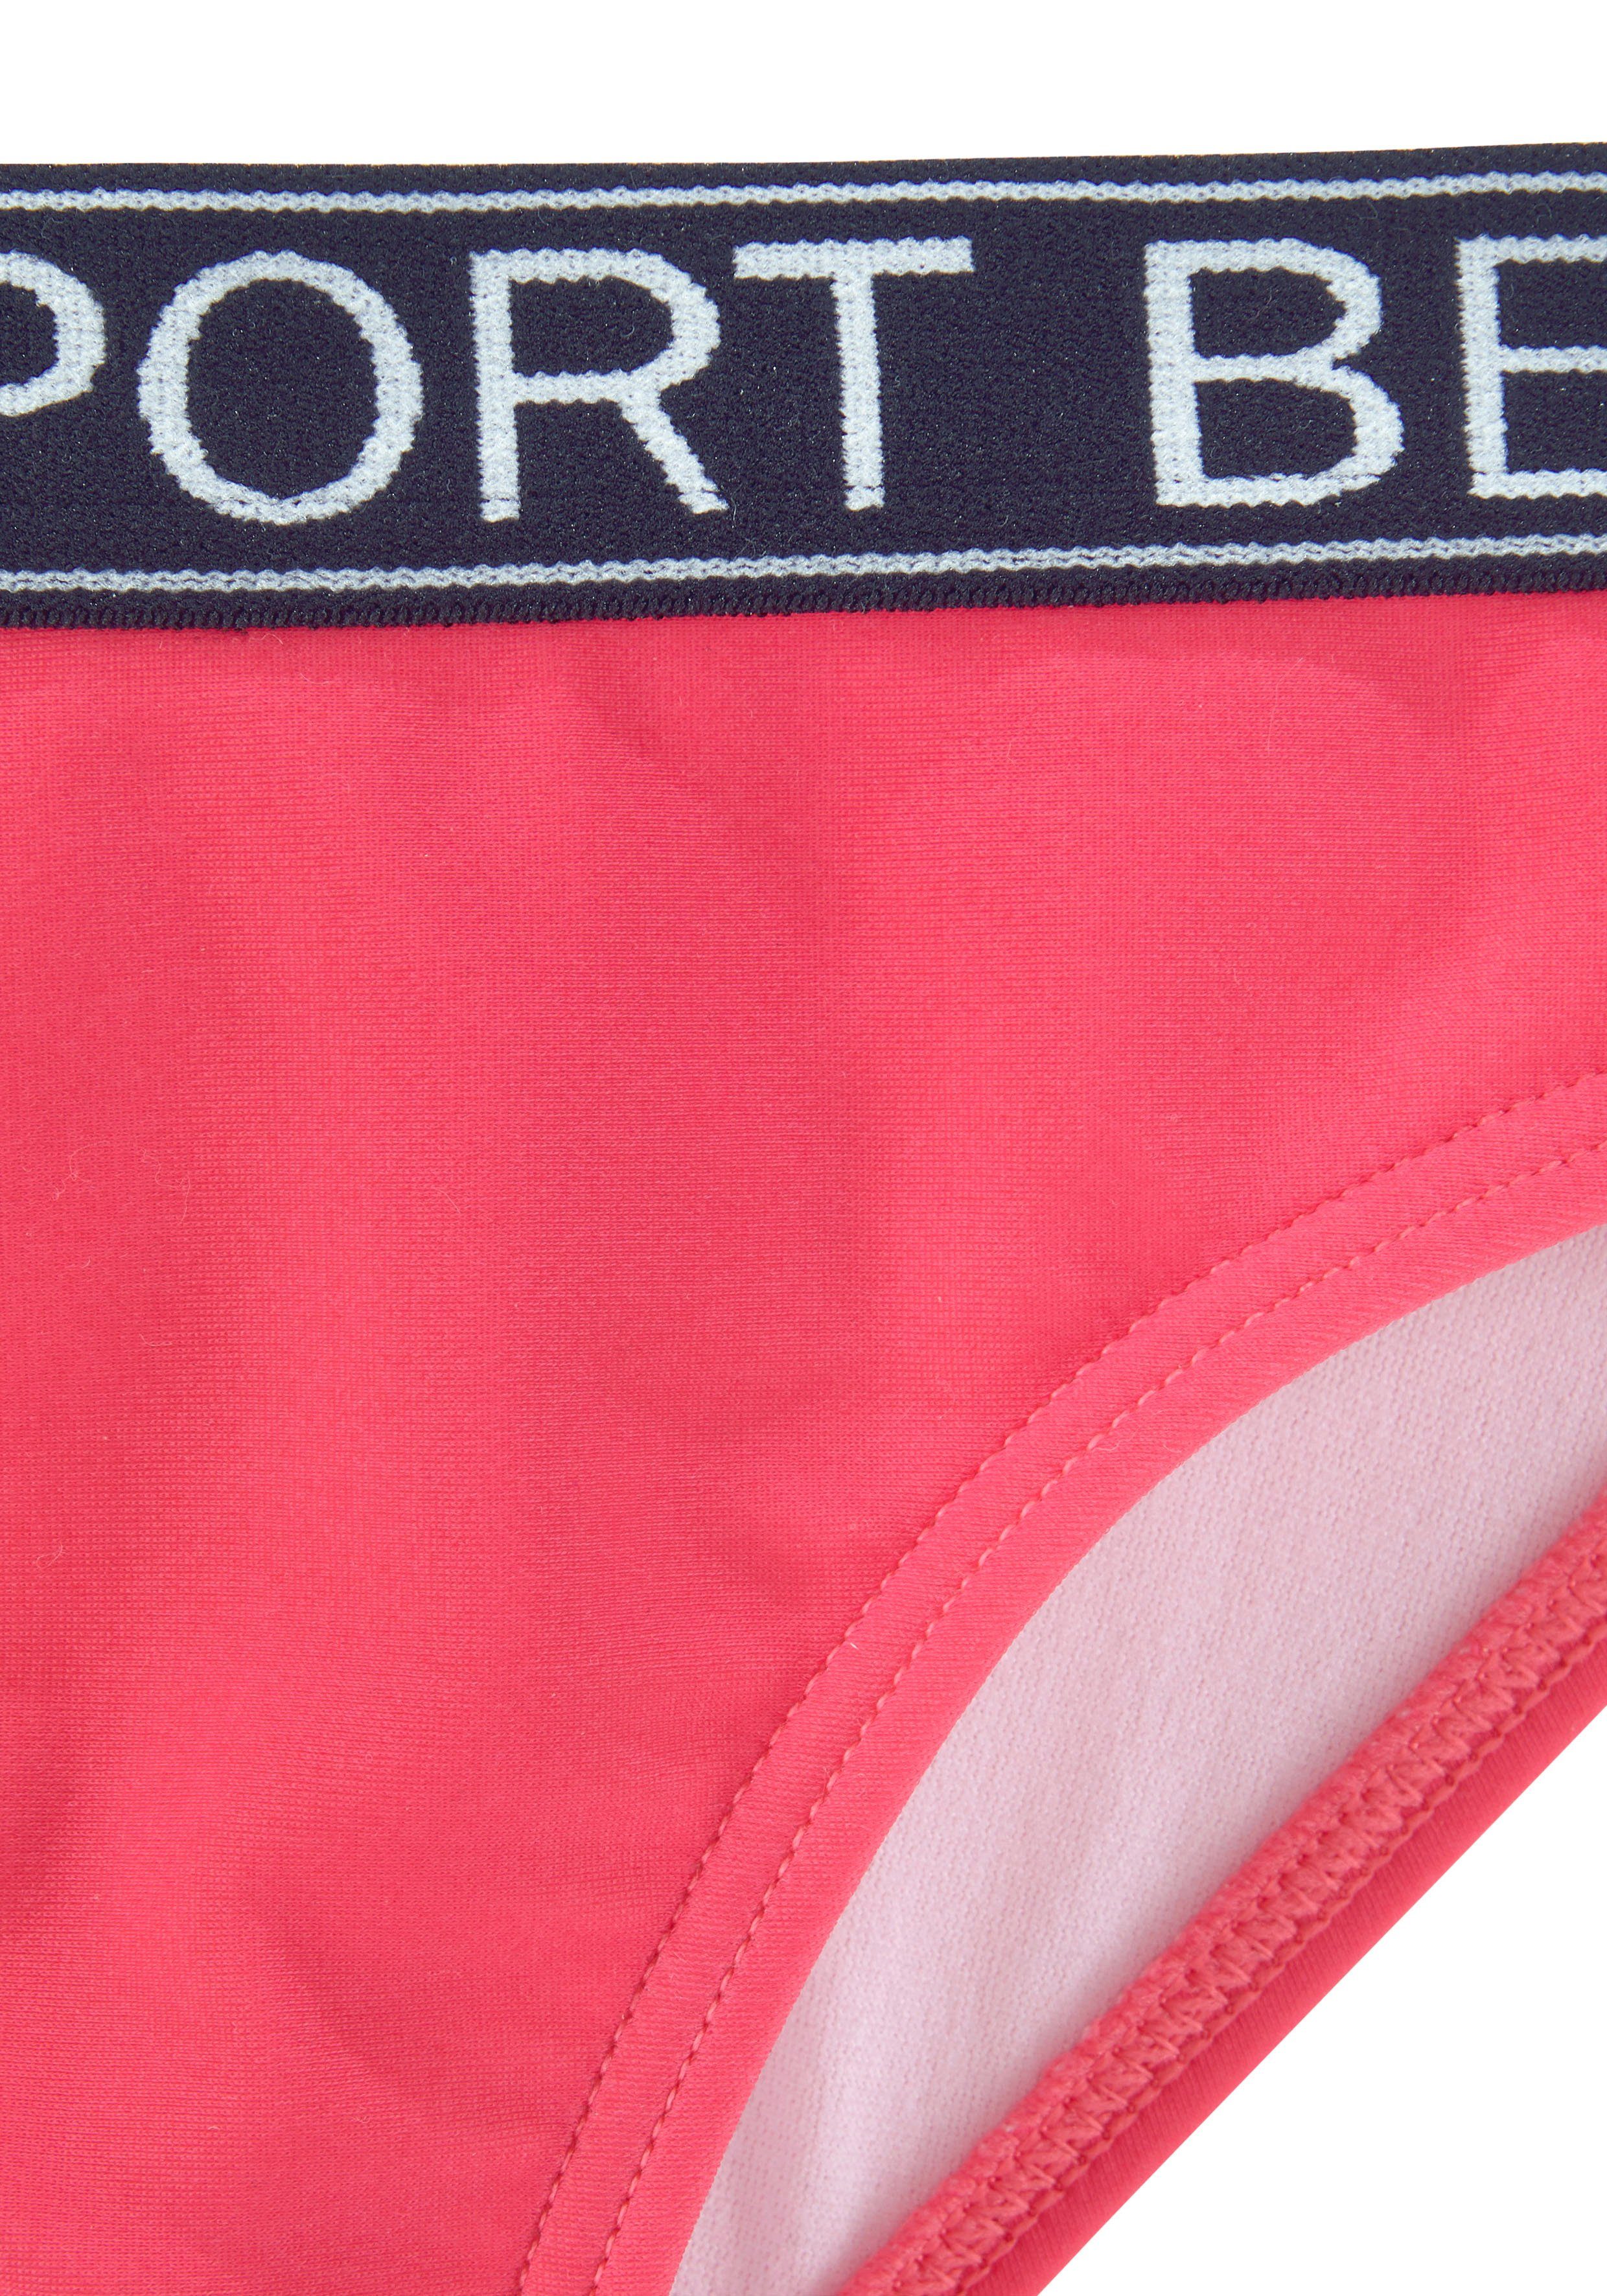 Bench. Bustier-Bikini Yva Design in Farben pink Kids und sportlichem